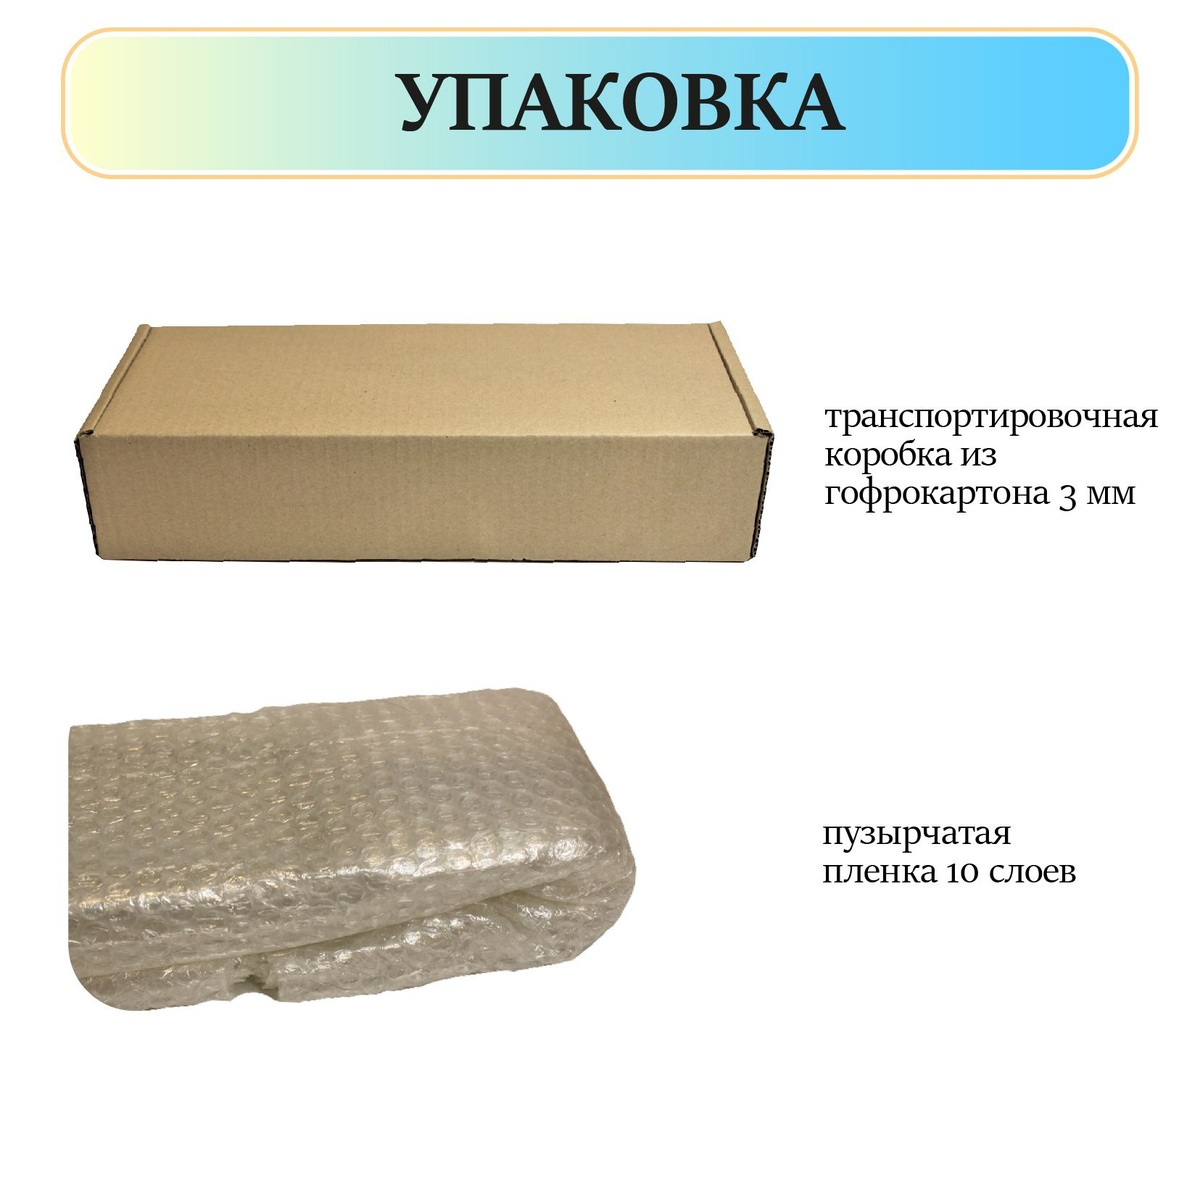 Блюдо Селедочница упакована в 10 слоев пузырчатой пленки и лежит в транспортировочной коробке из гофрокартона 3 мм толщины.